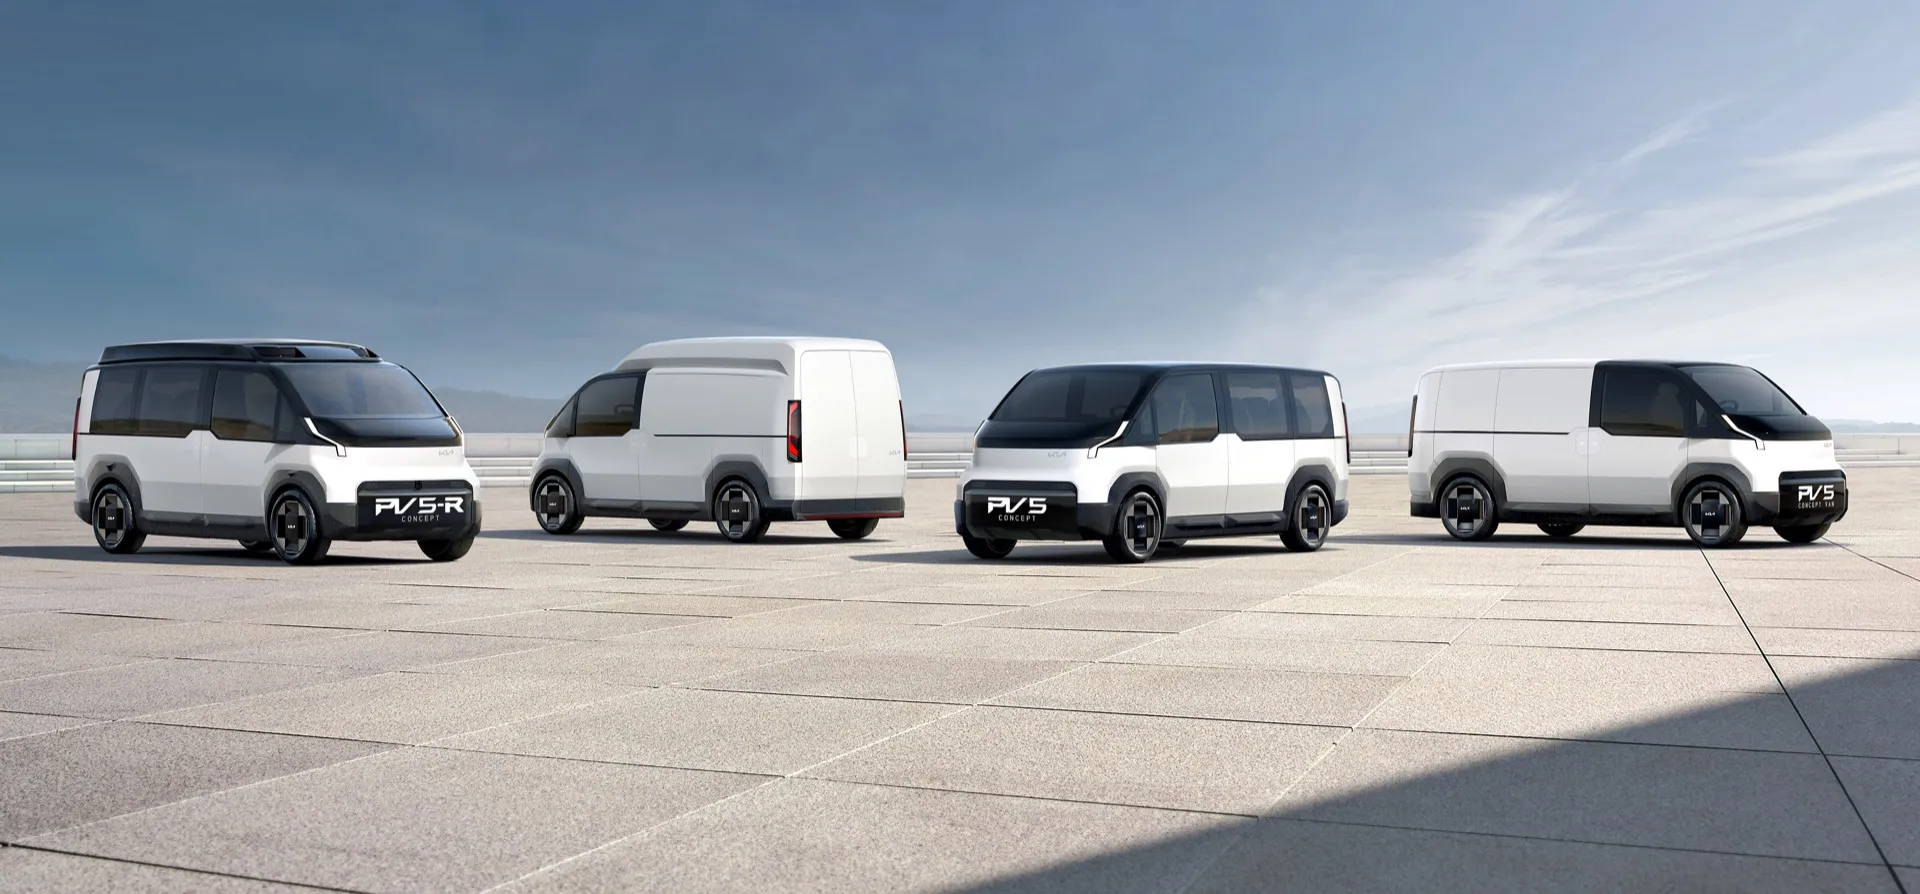 Kia PBV concepts preview flexible electric vans, and a robotaxi